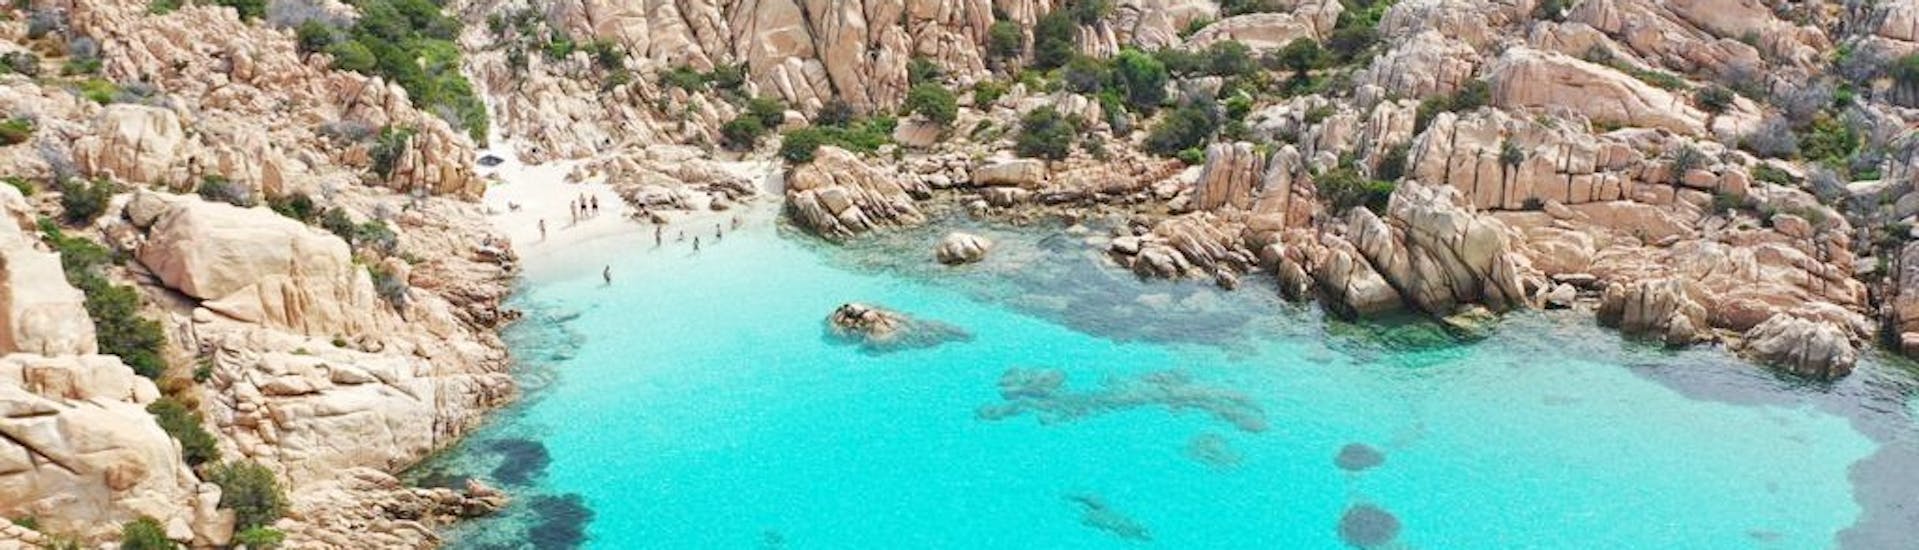 Zauberhafter sardischer Strand, den man während einer privaten RIB-Bootstour von Cannigione zum Archipel von La Maddalena mit Noleggio Le Isole Cannigione besuchen kann.